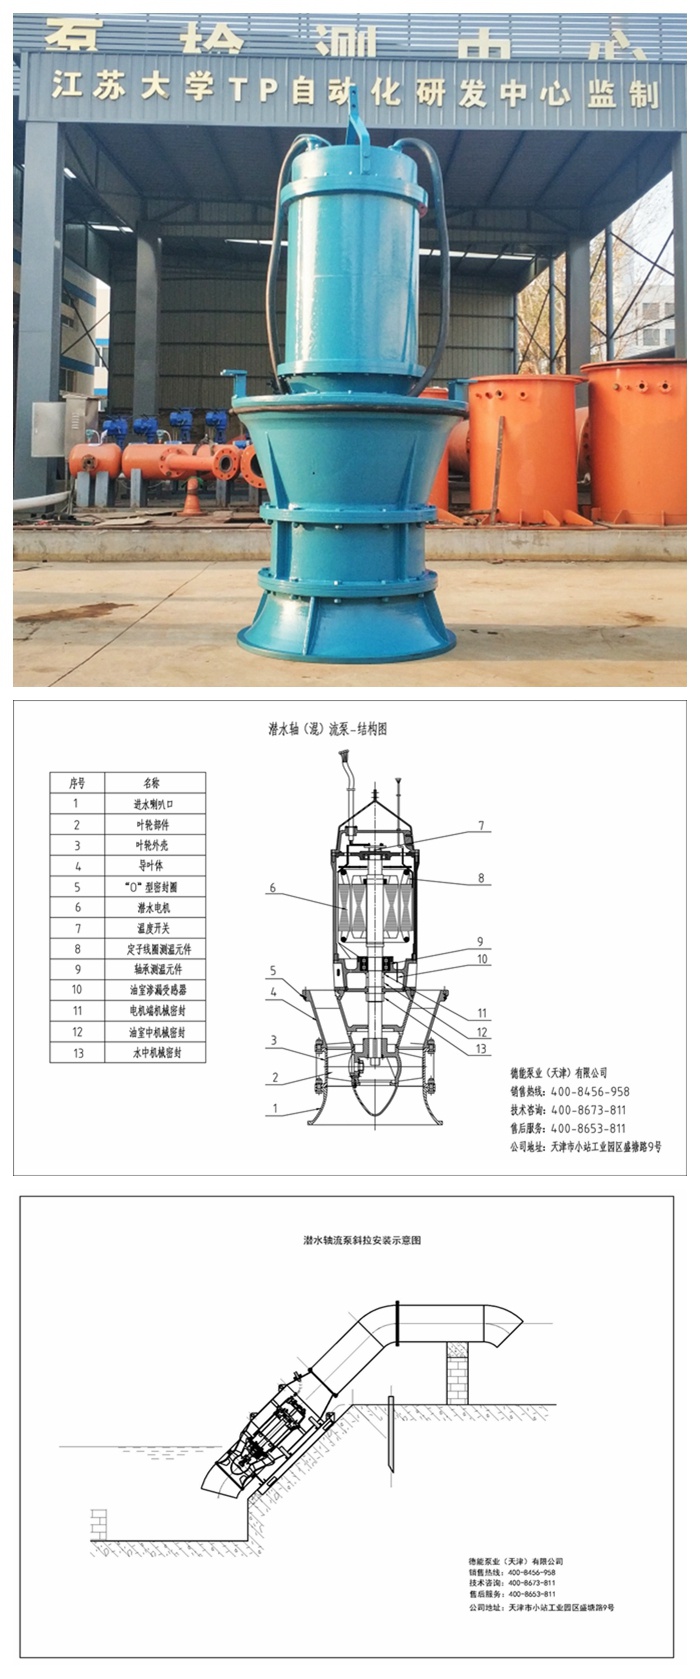 四川zlb型立式轴流泵品牌,德能泵业提供优质产品